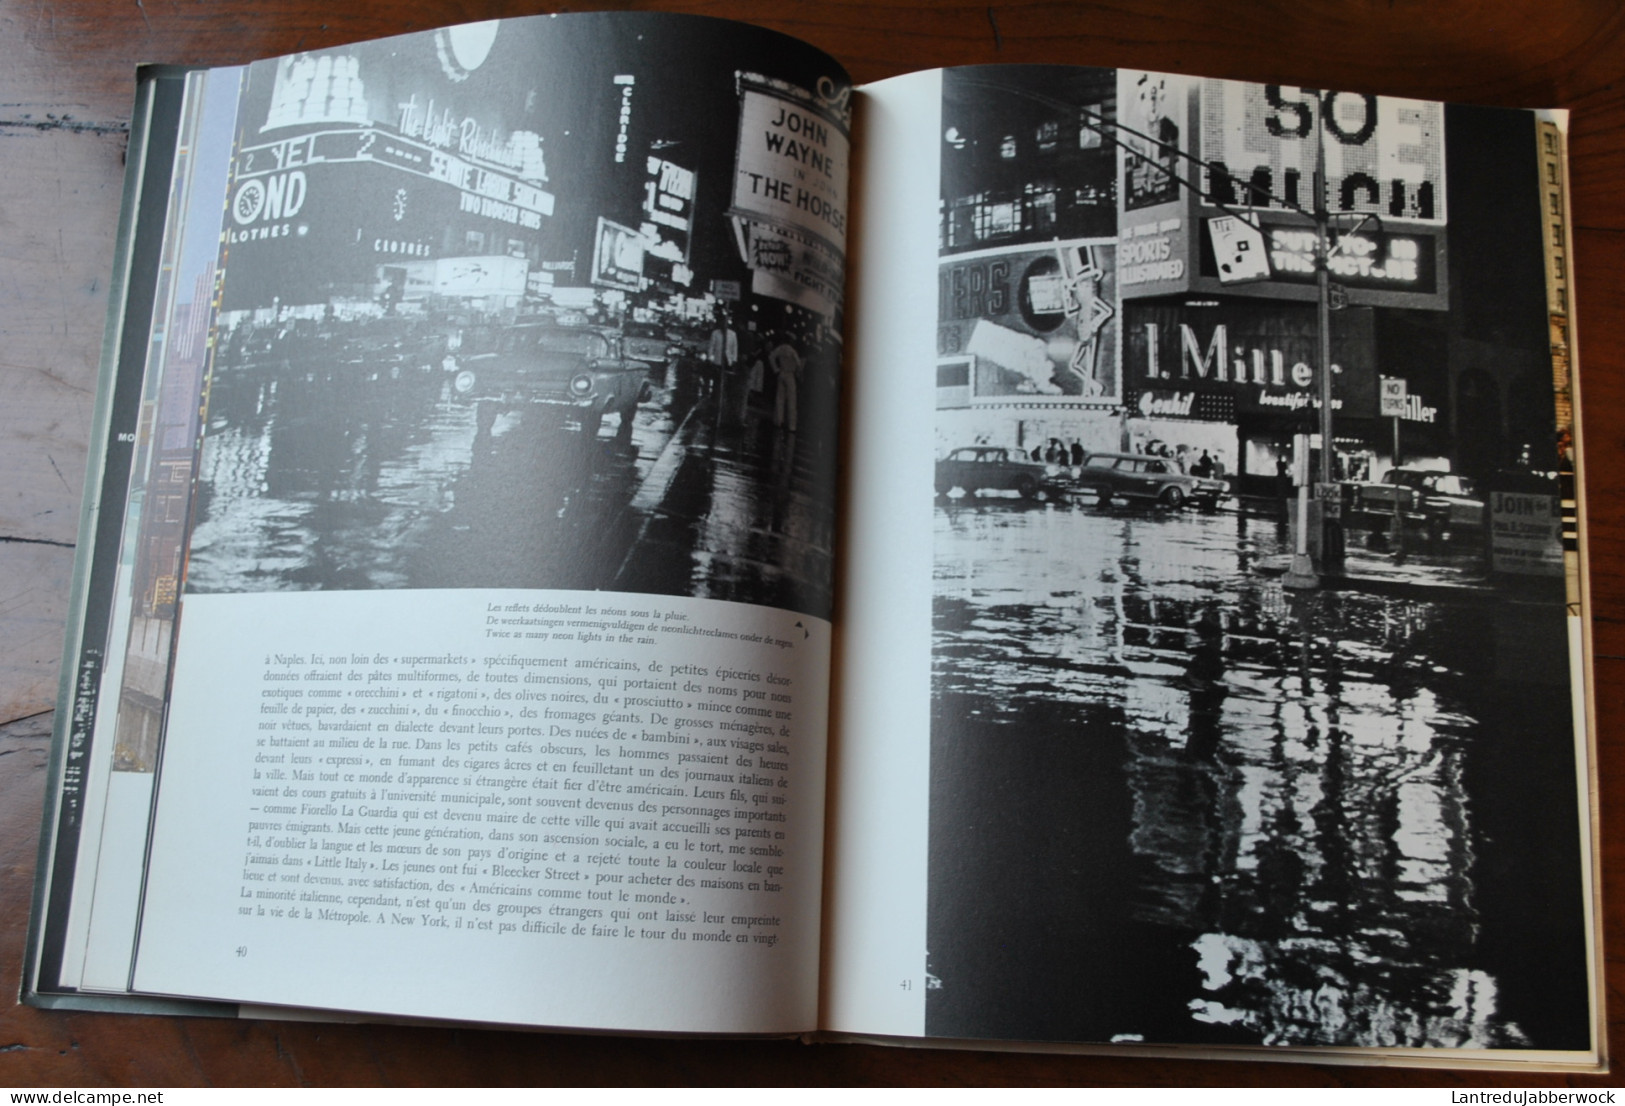 Sabena revue 2 1959 New-York Etats-unis les Quadri-réacteurs photographie contribution photographique de Cartier-Bresson